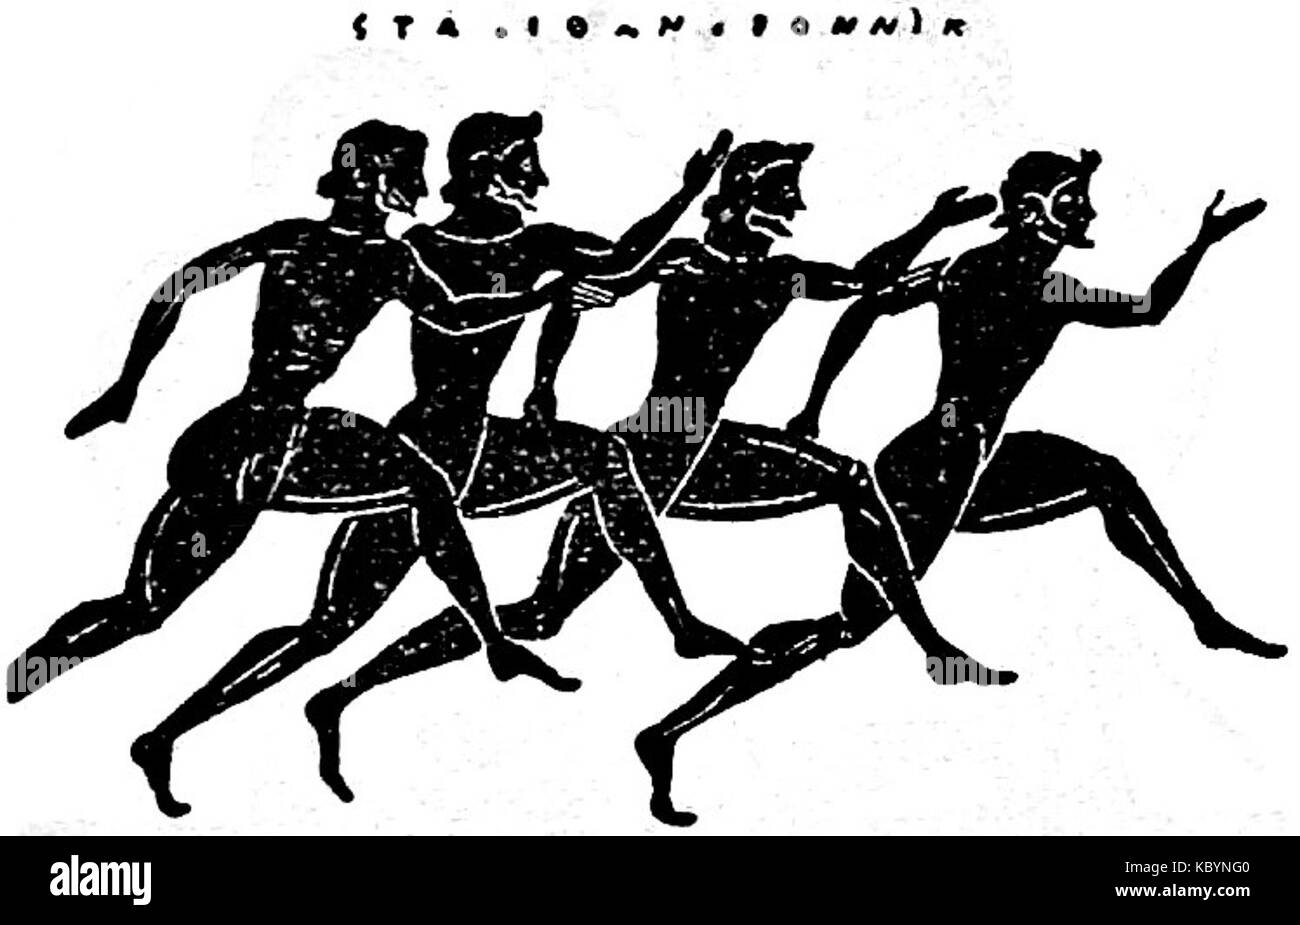 Состязания атлетов. Древняя Греция Олимпийские игры беш. Бег в древней Греции на Олимпийских играх. Легкая атлетика в древней Греции. Стадиодром в древней Греции это.